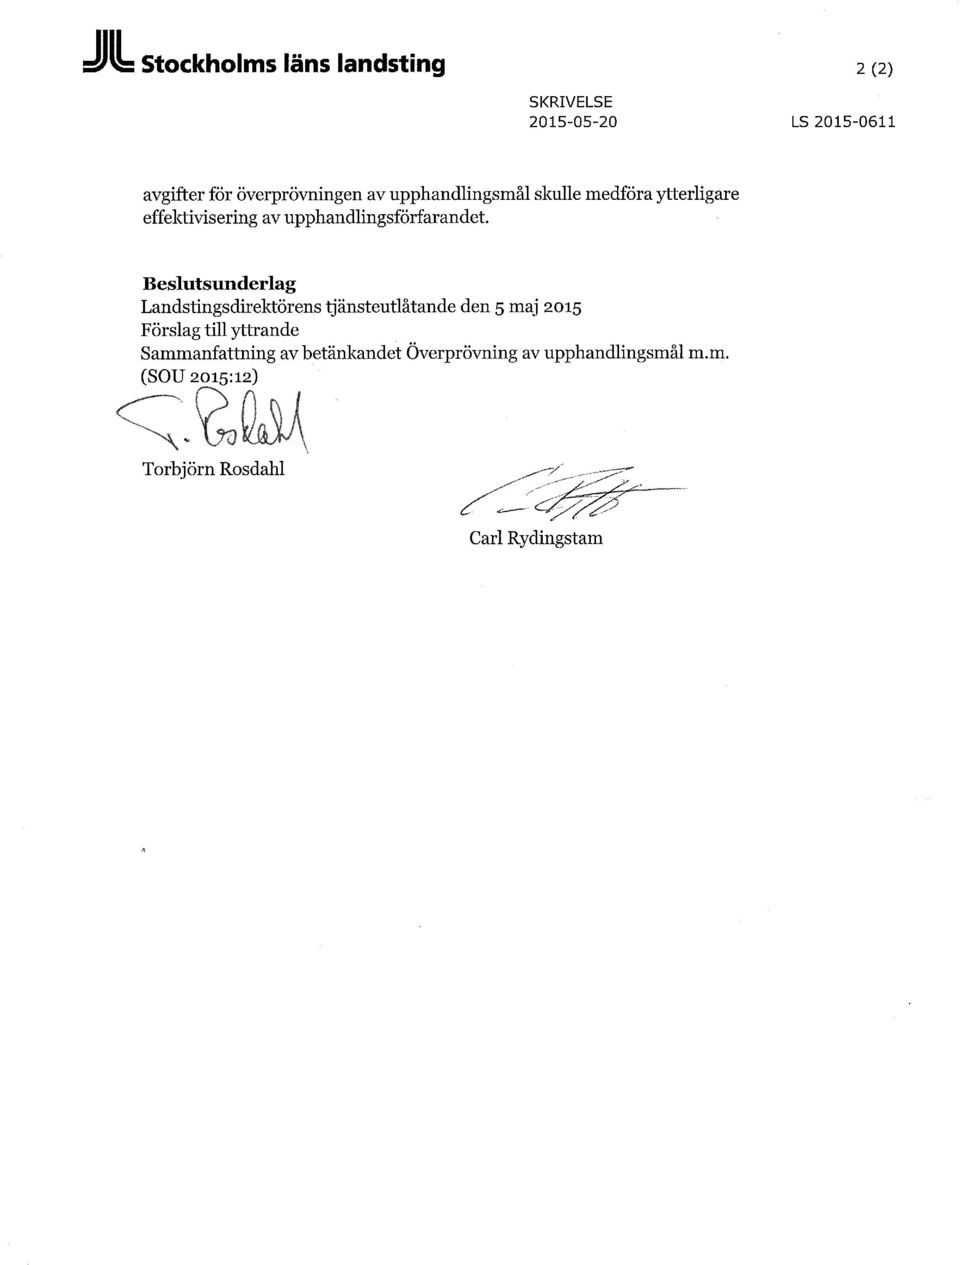 Beslutsunderlag Landstingsdirektörens tjänsteutlåtande den 5 maj 2015 Förslag till yttrande